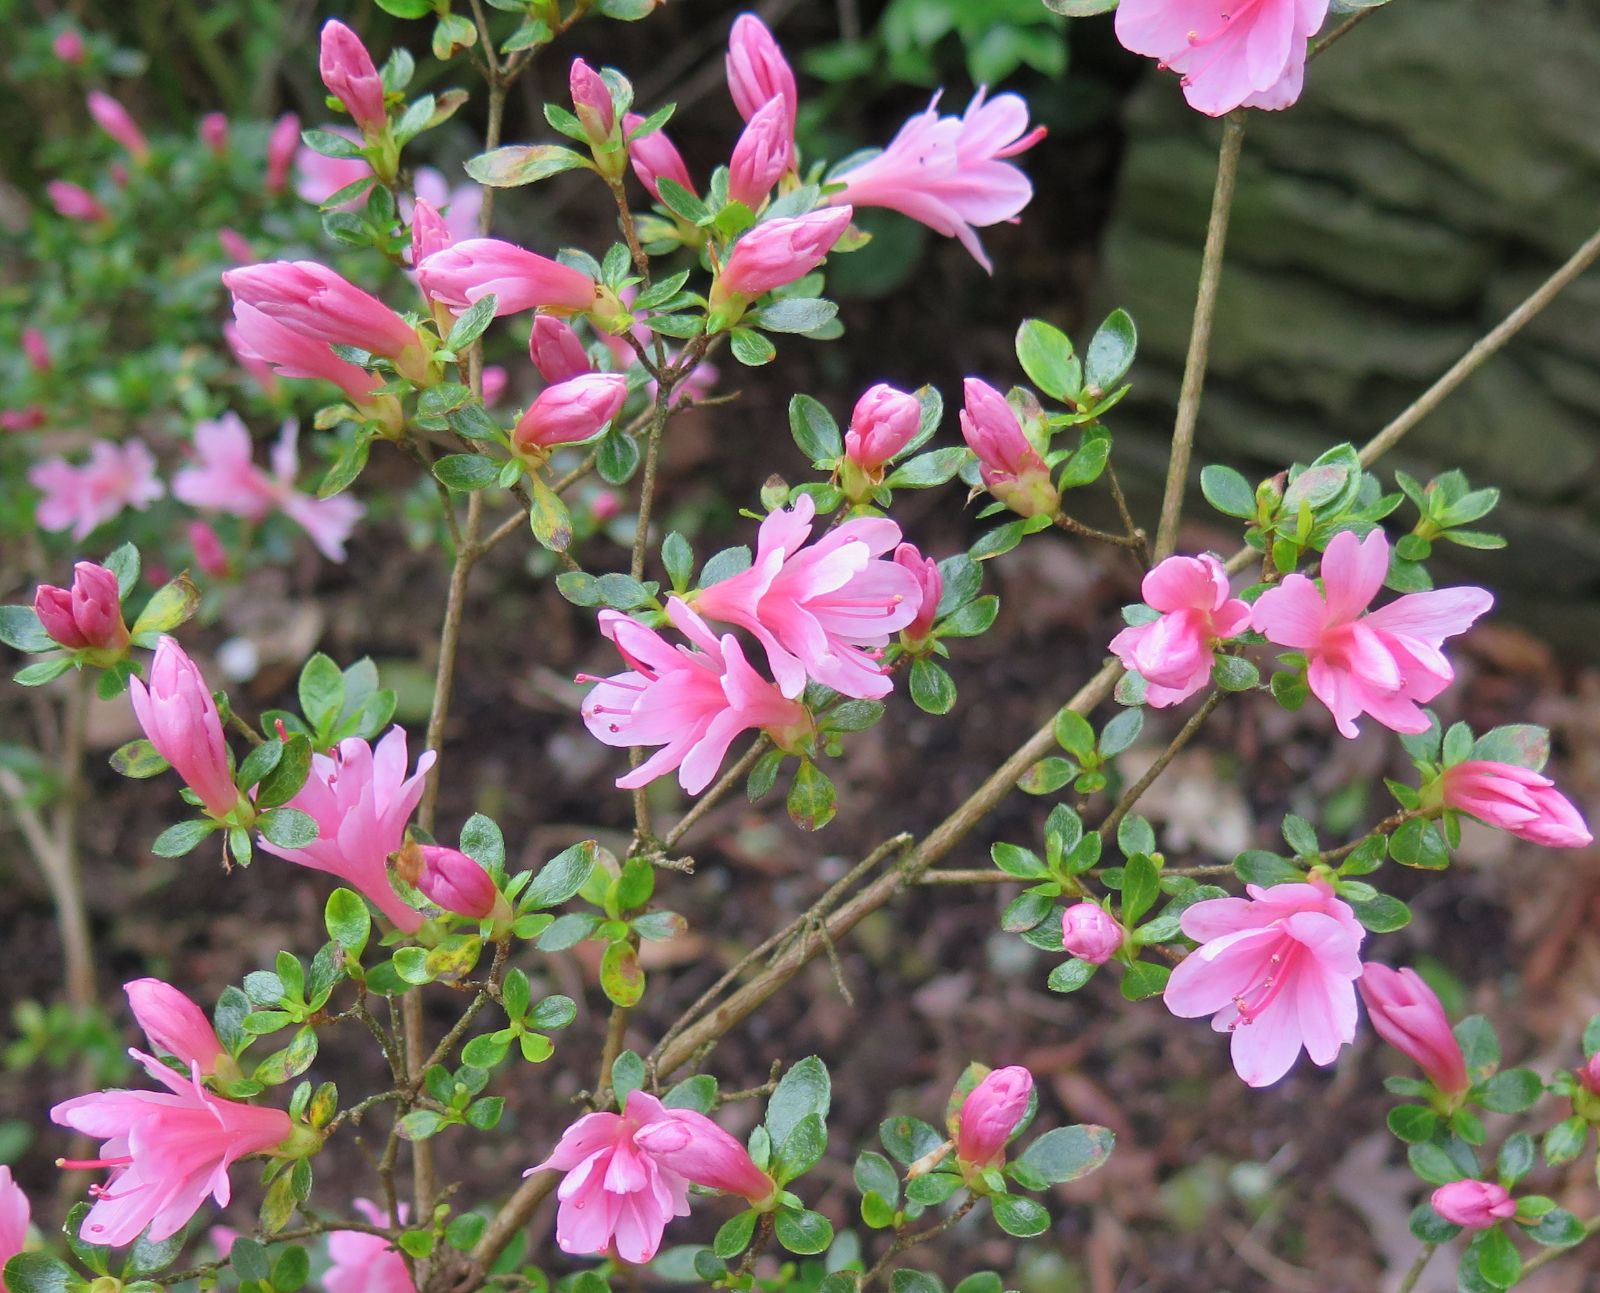 Rhododendron “Rosebud”; Gable hybrid Azalea “Rosebud”